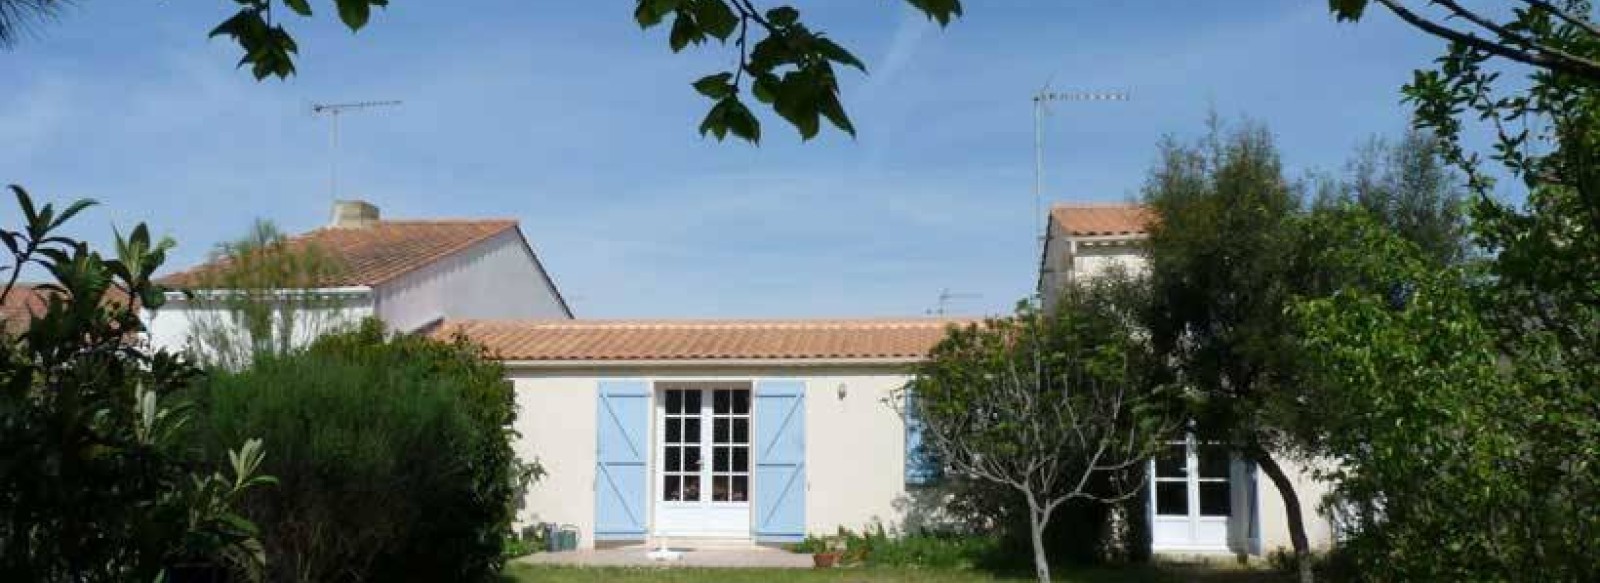 Maison avec agreable jardin clos et arbore a Barbatre sur l'ile de Noirmoutier